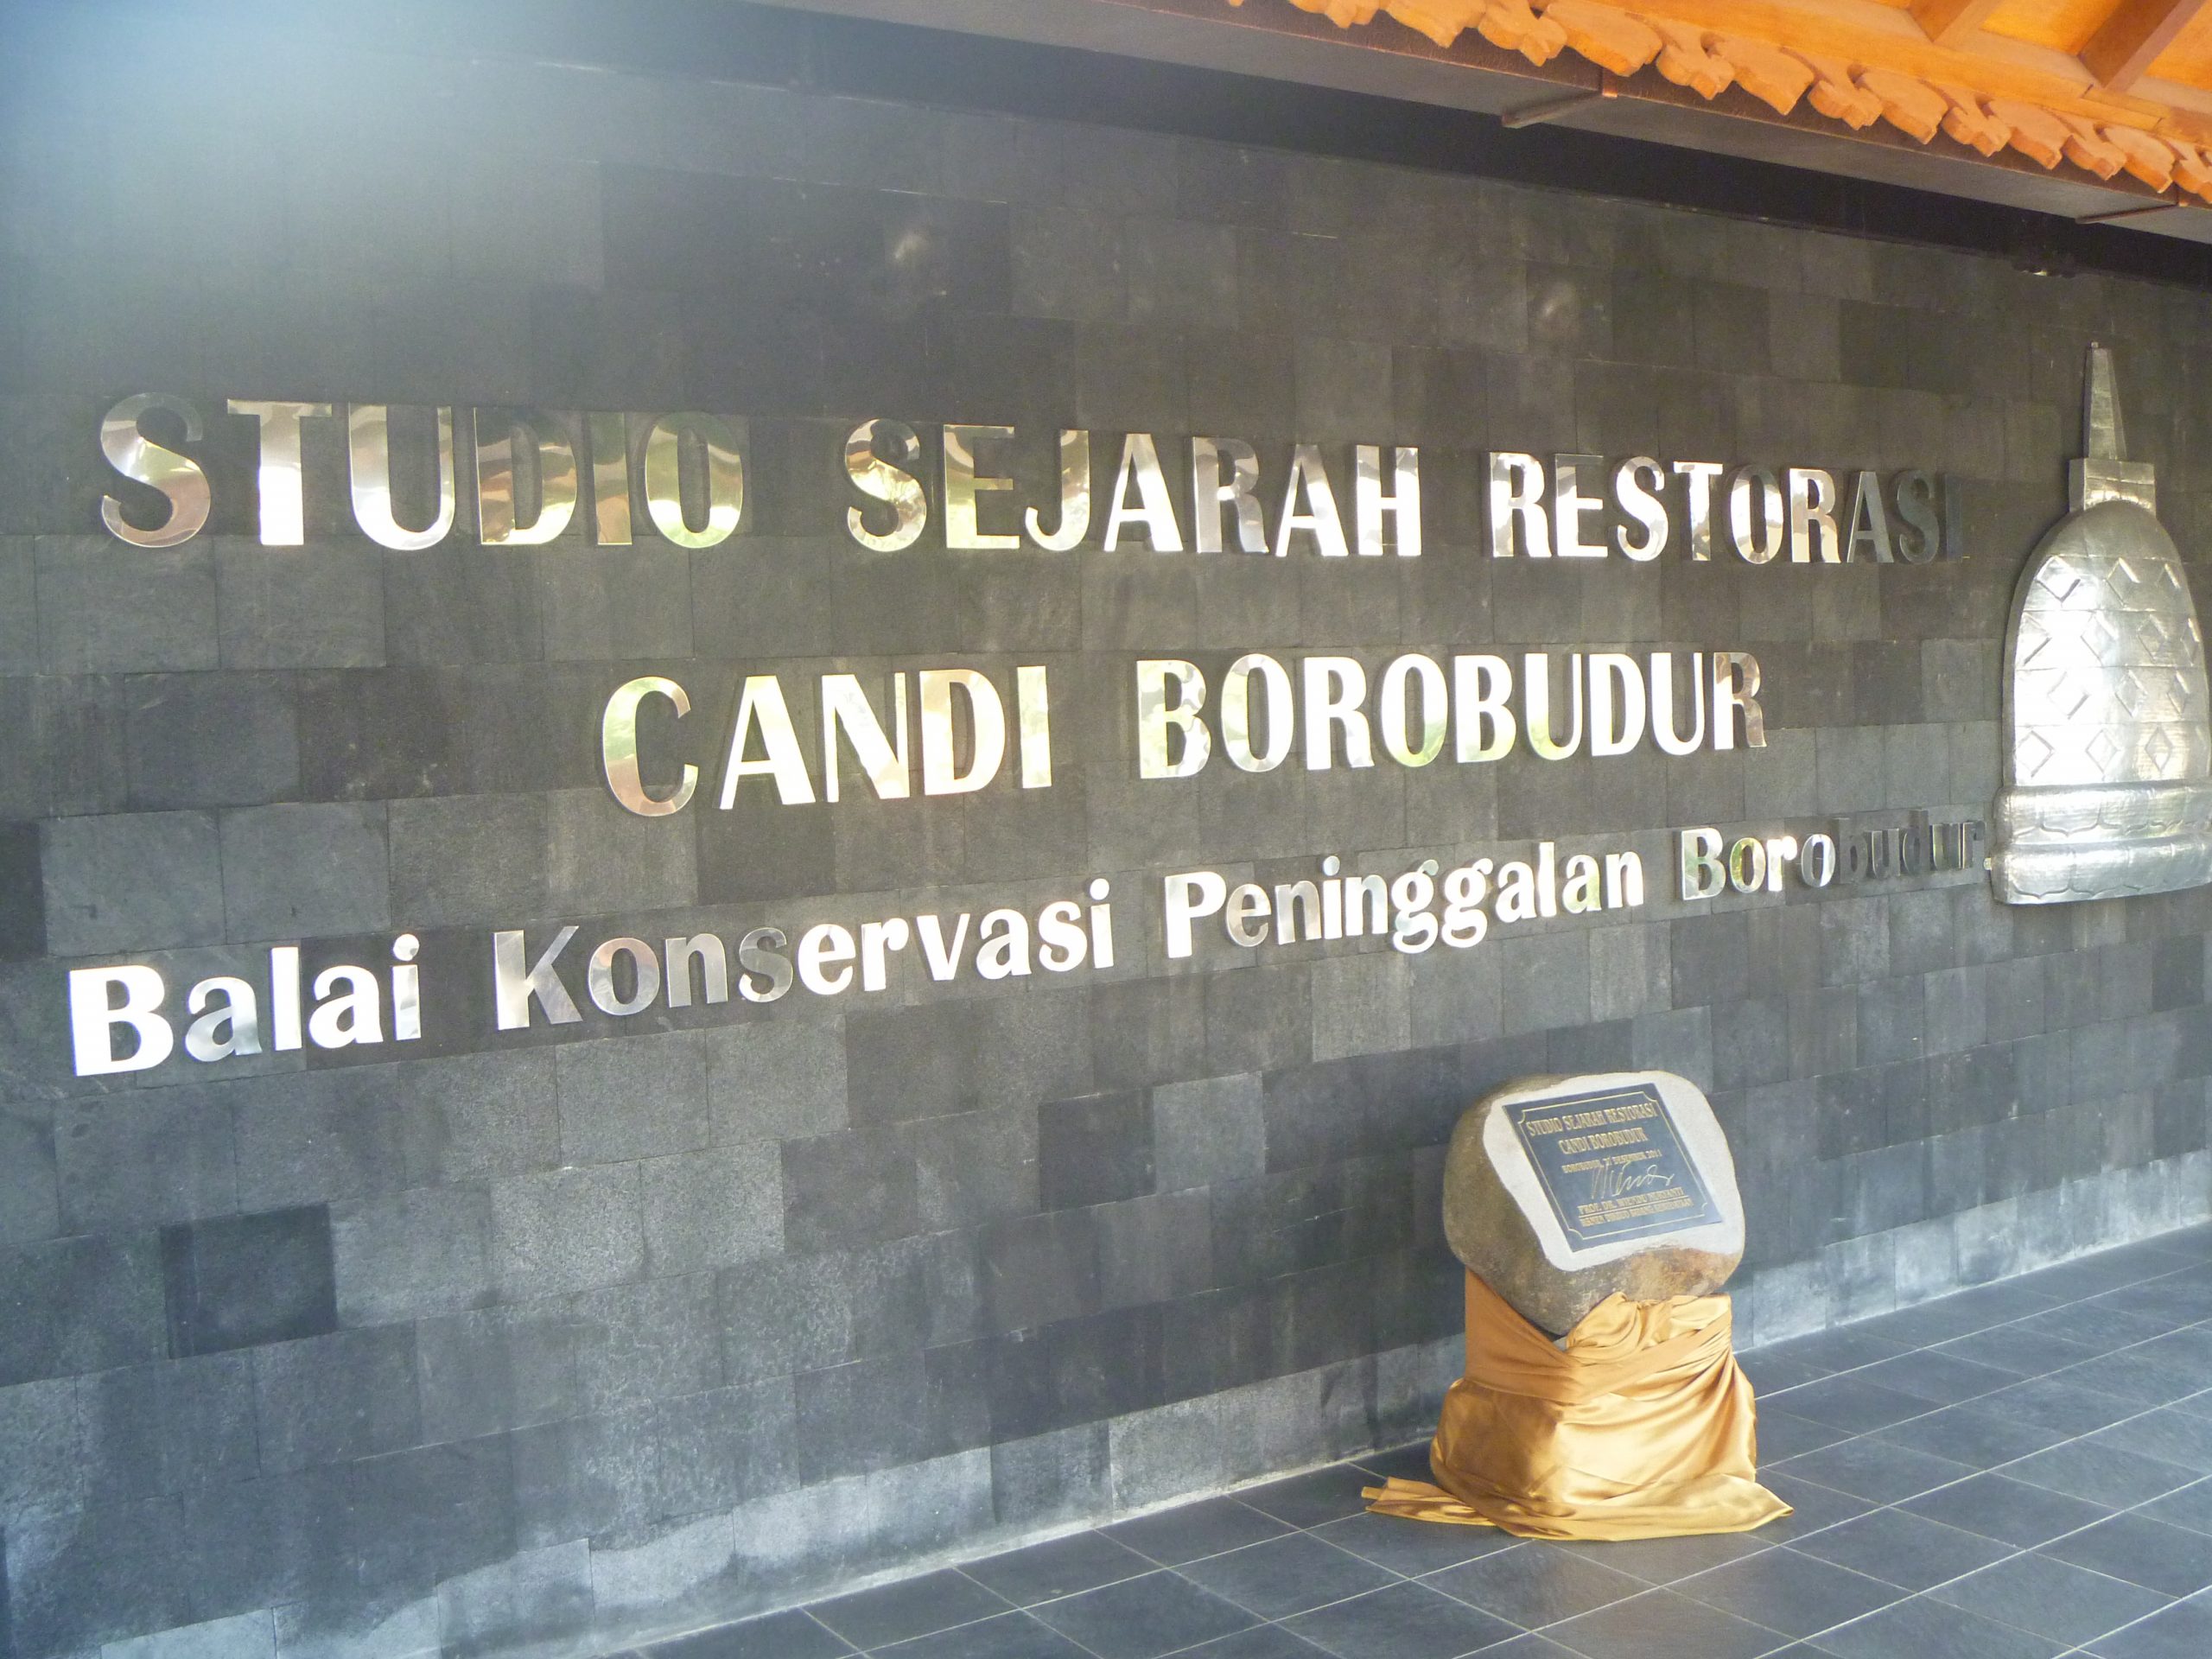 Studio sejarah restorasi Candi Borobudur